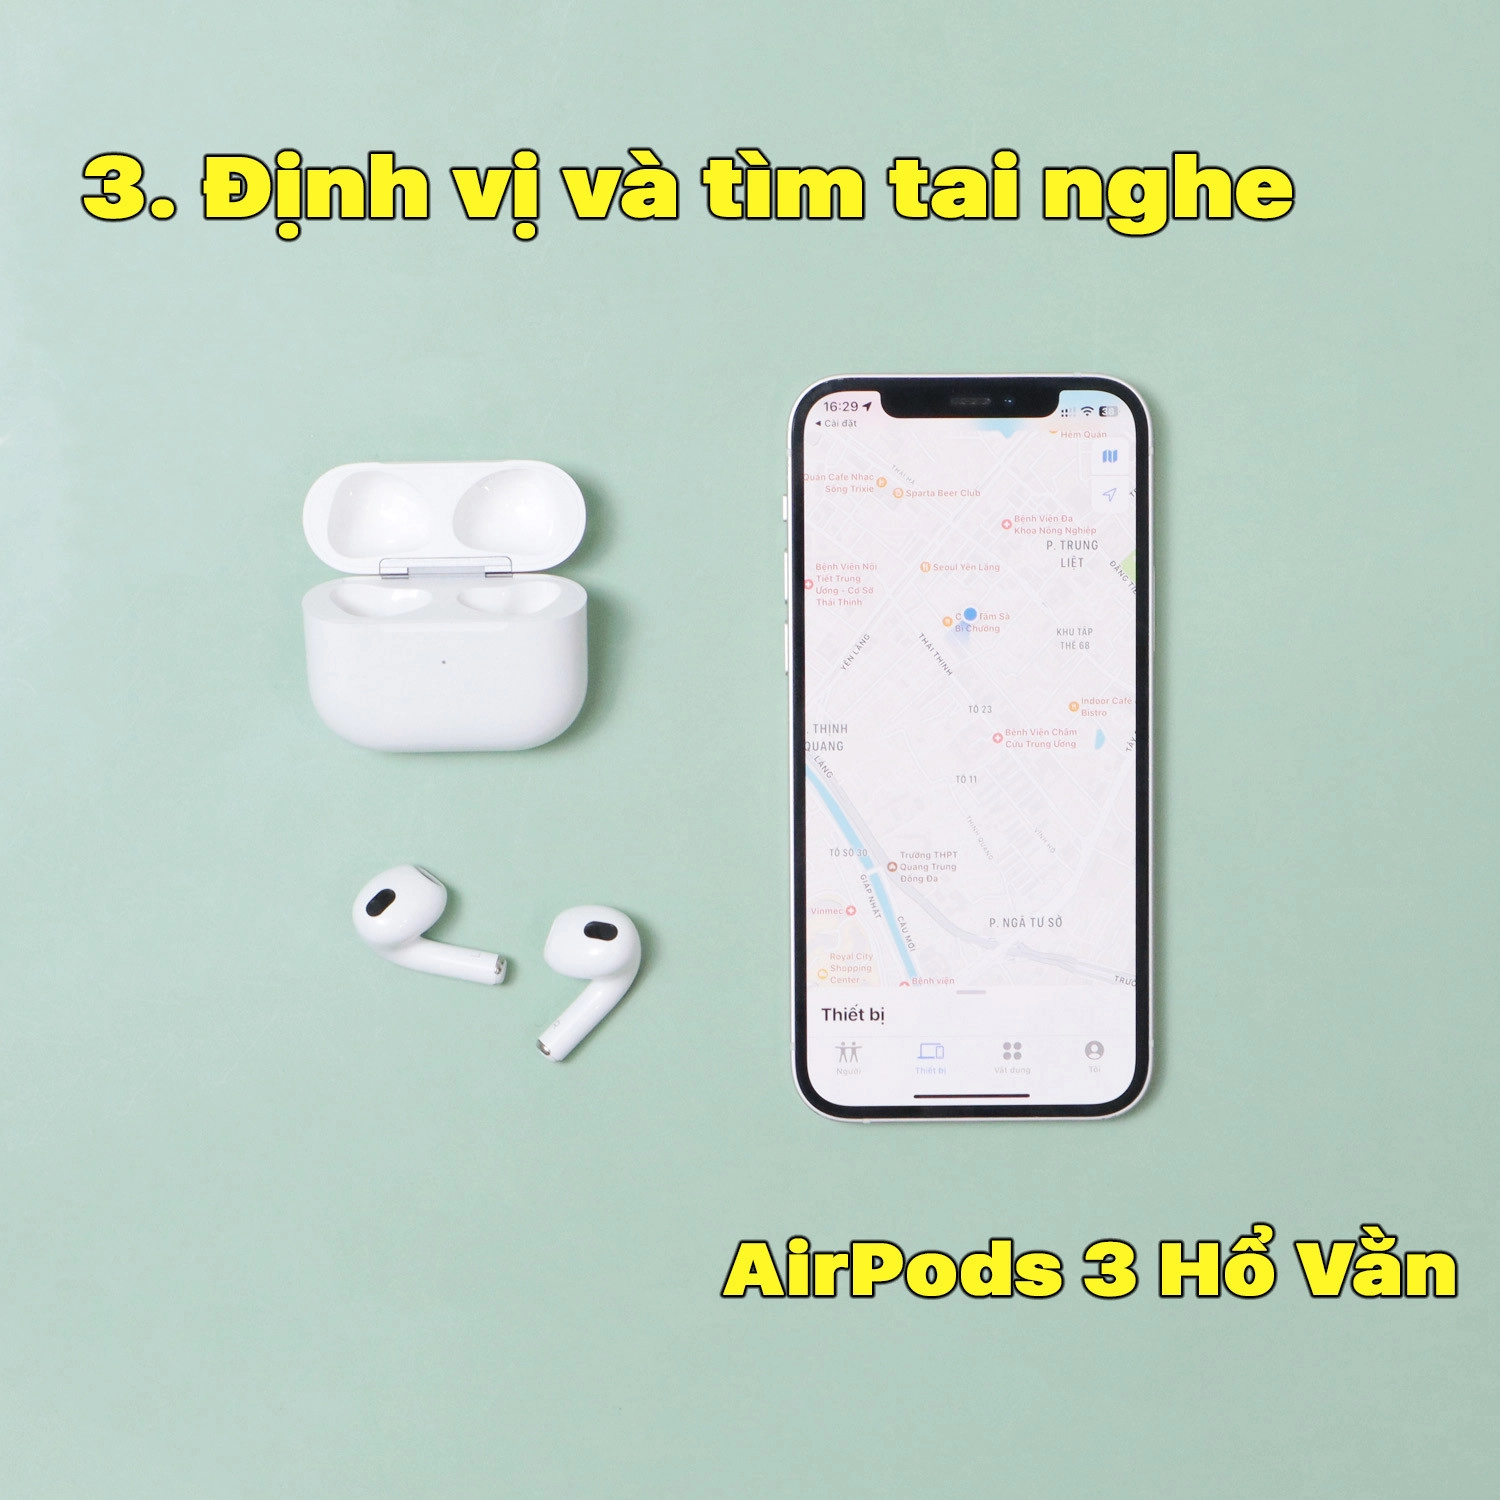 tai-nghe-airpods-3-ho-van-3